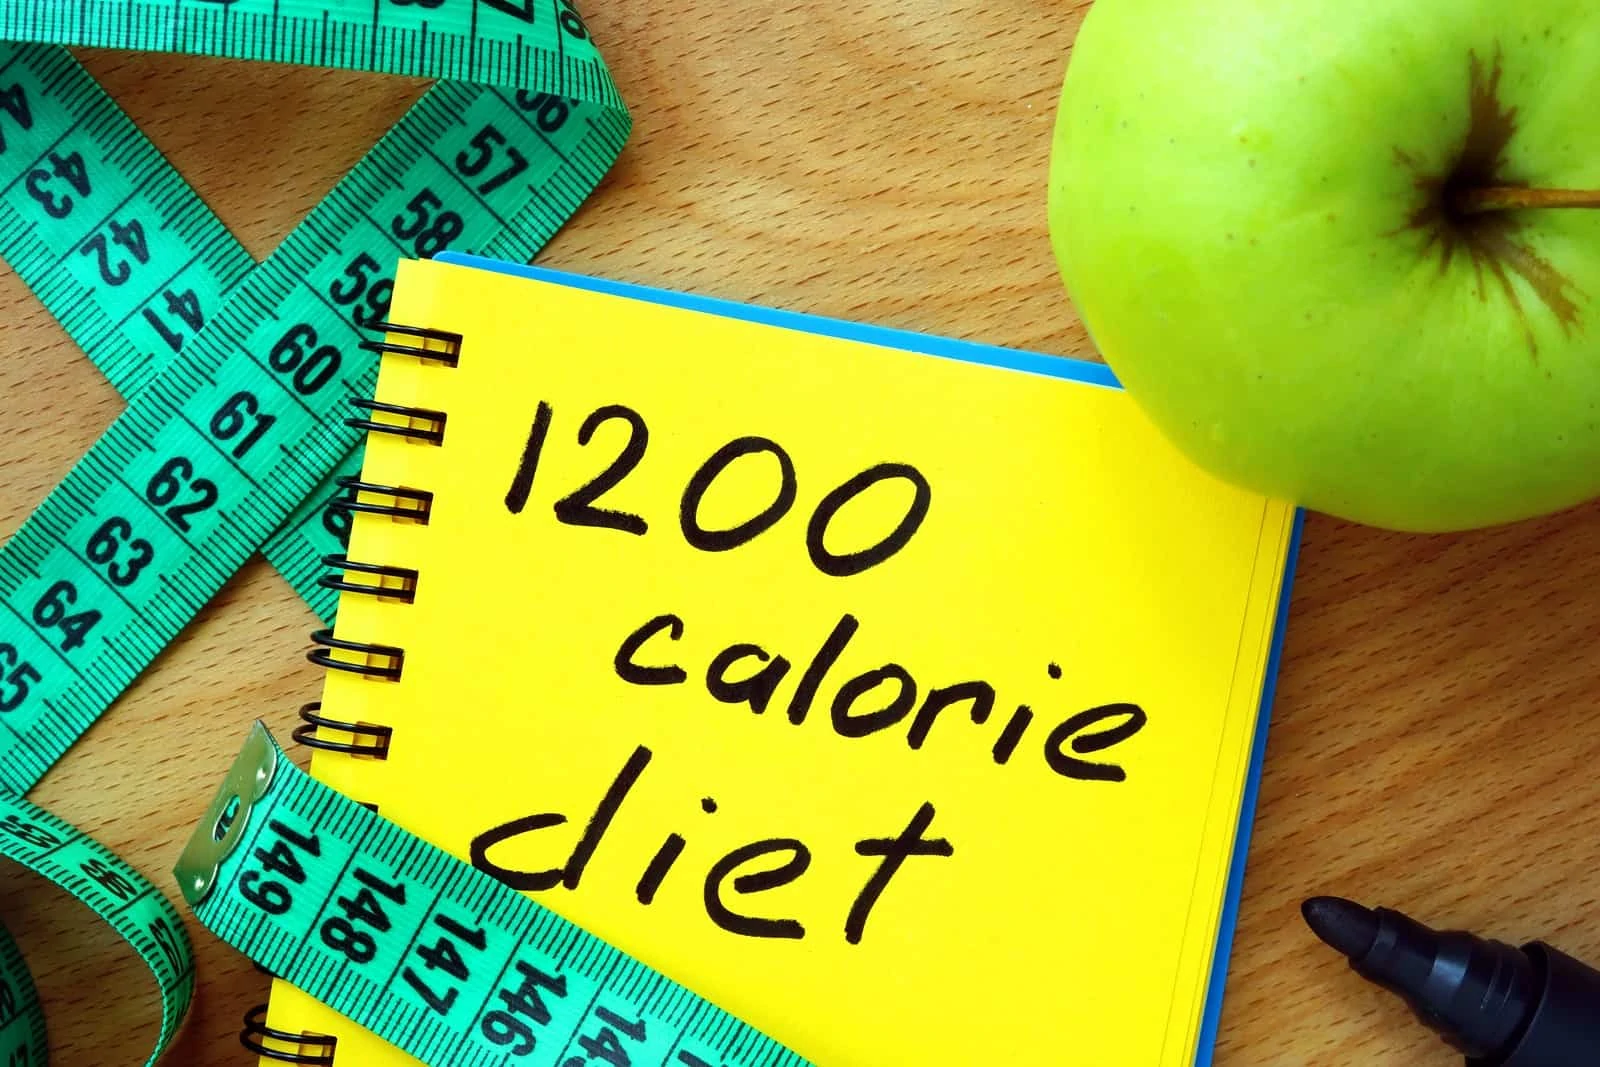 1200 kalóriás diéta tapasztalatok